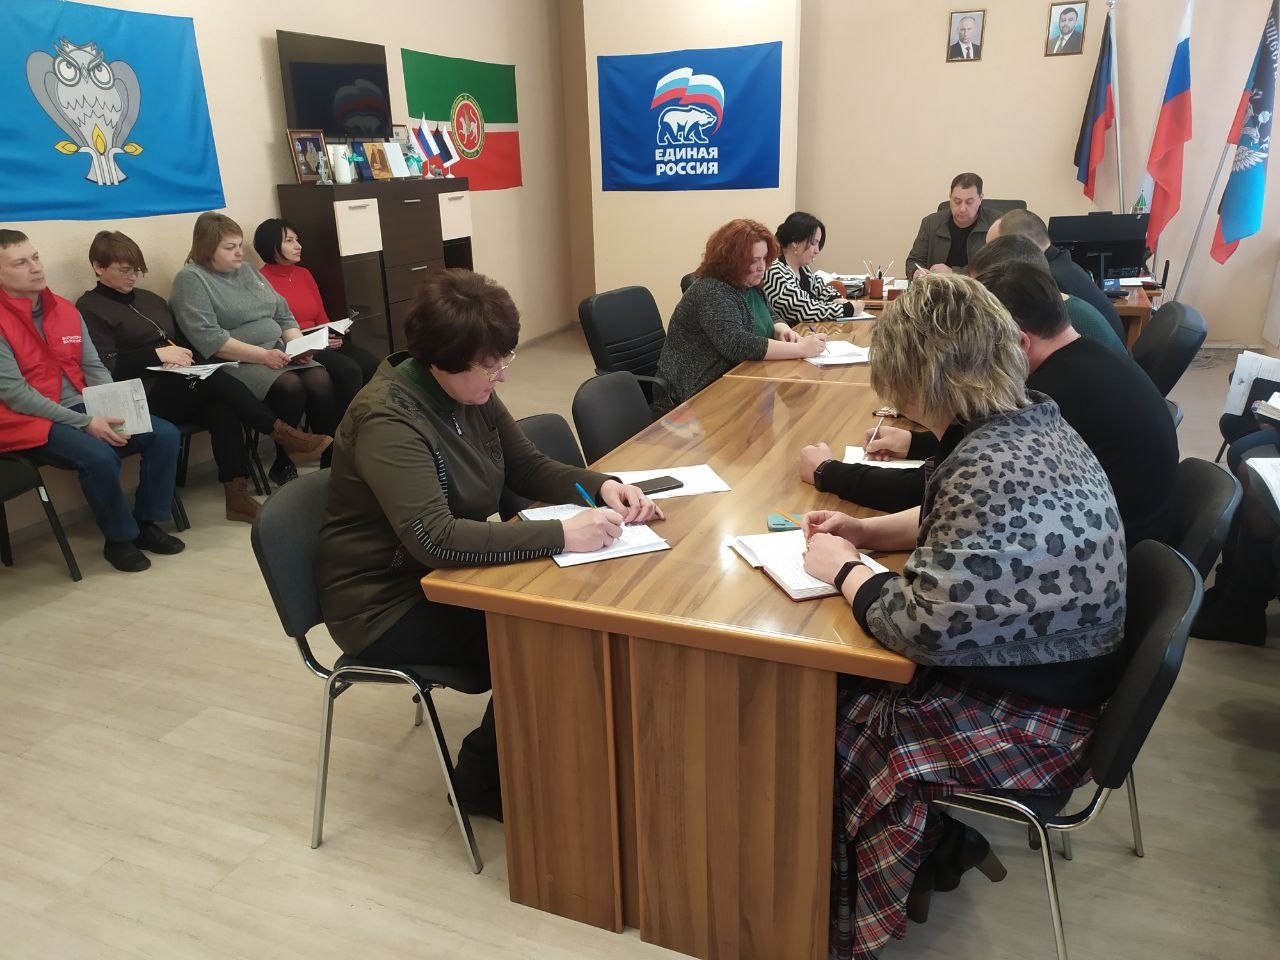 Глава администрации Волновахского района провел утреннее аппаратное совещание по вопросам жизнедеятельности района